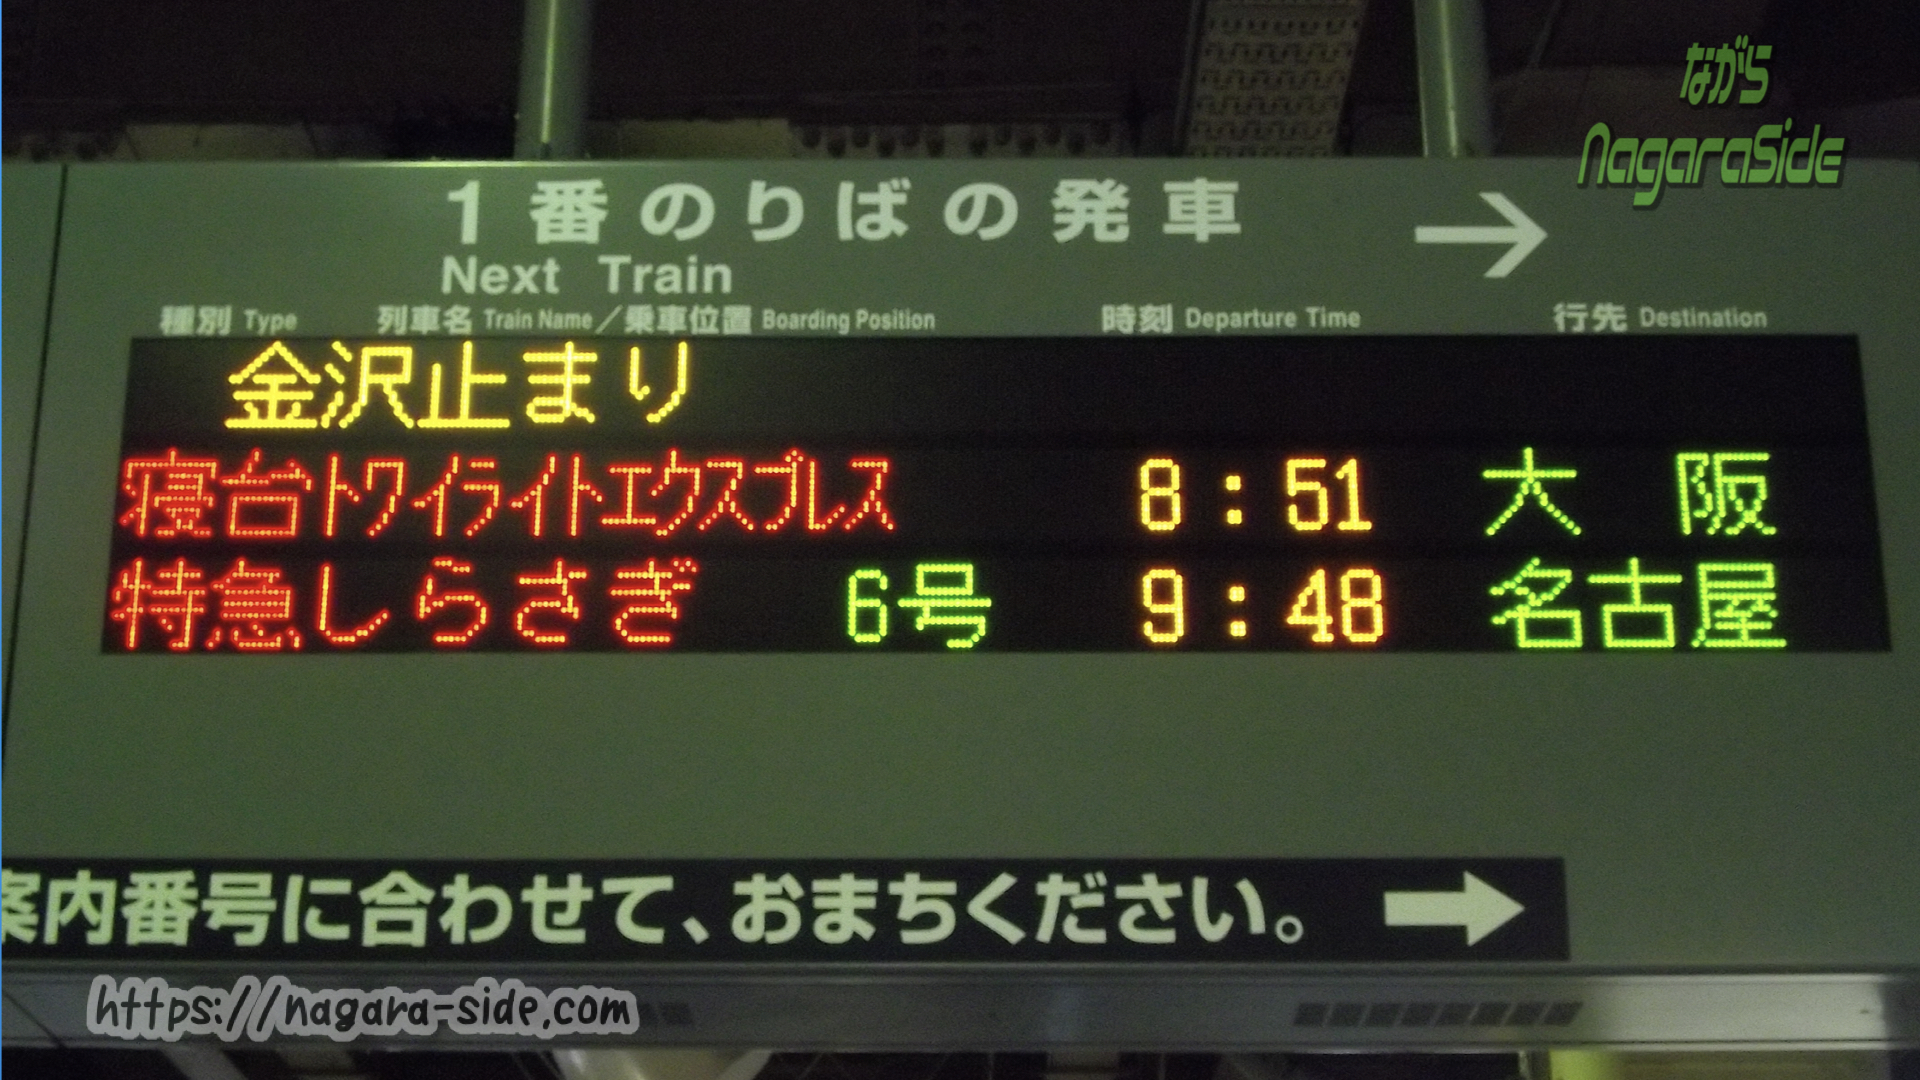 各方面に伸びていた金沢駅の列車を物語る発車標